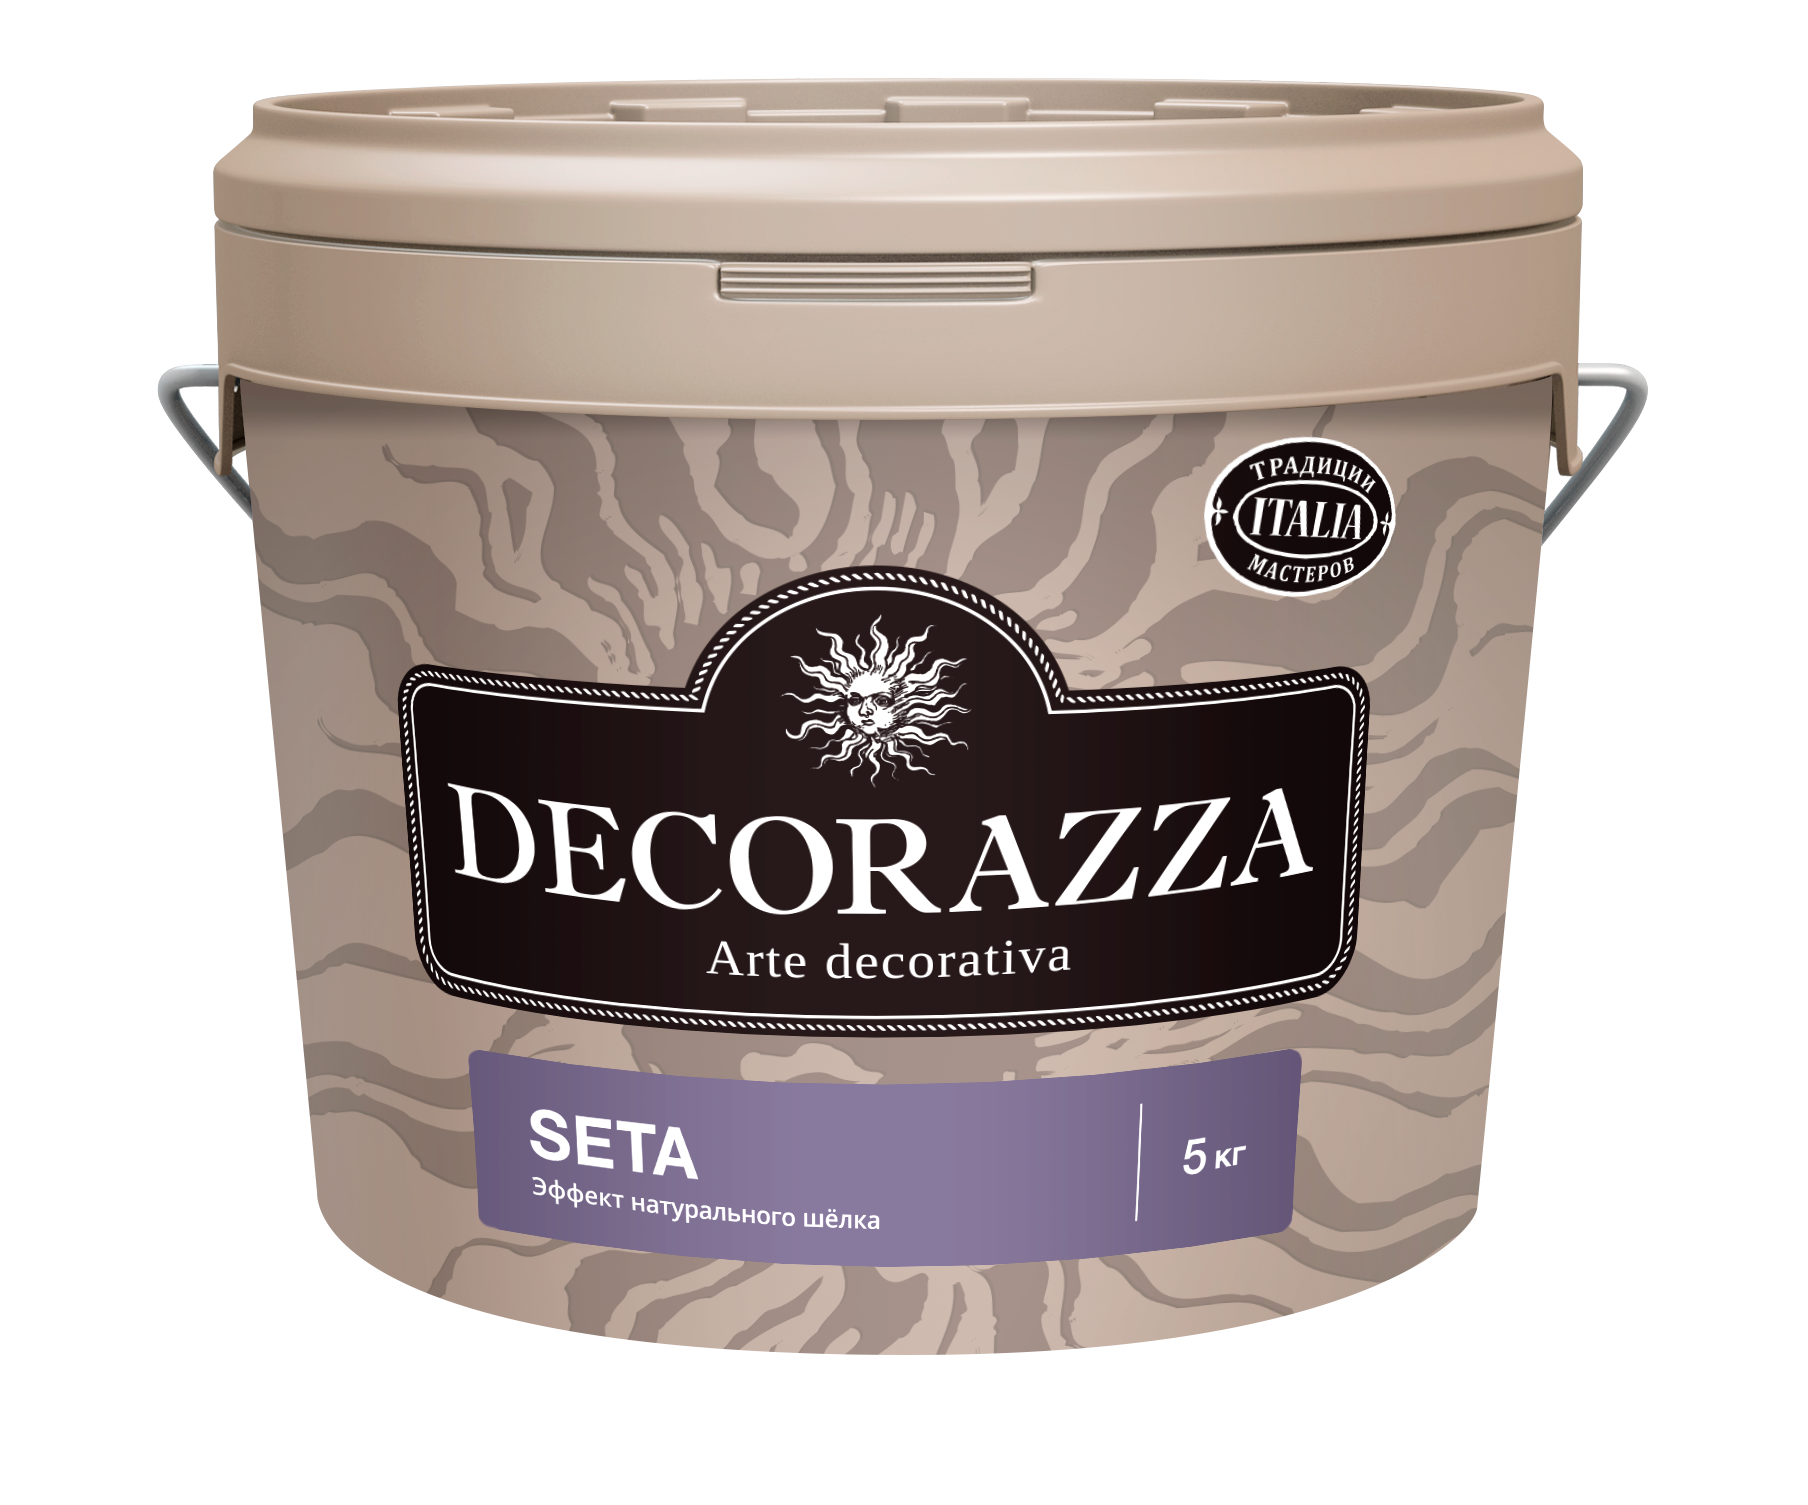 Декоративная штукатурка Decorazza Seta Argento ST 001, серебро, 5 кг декоративная фактурная штукатурка decorazza